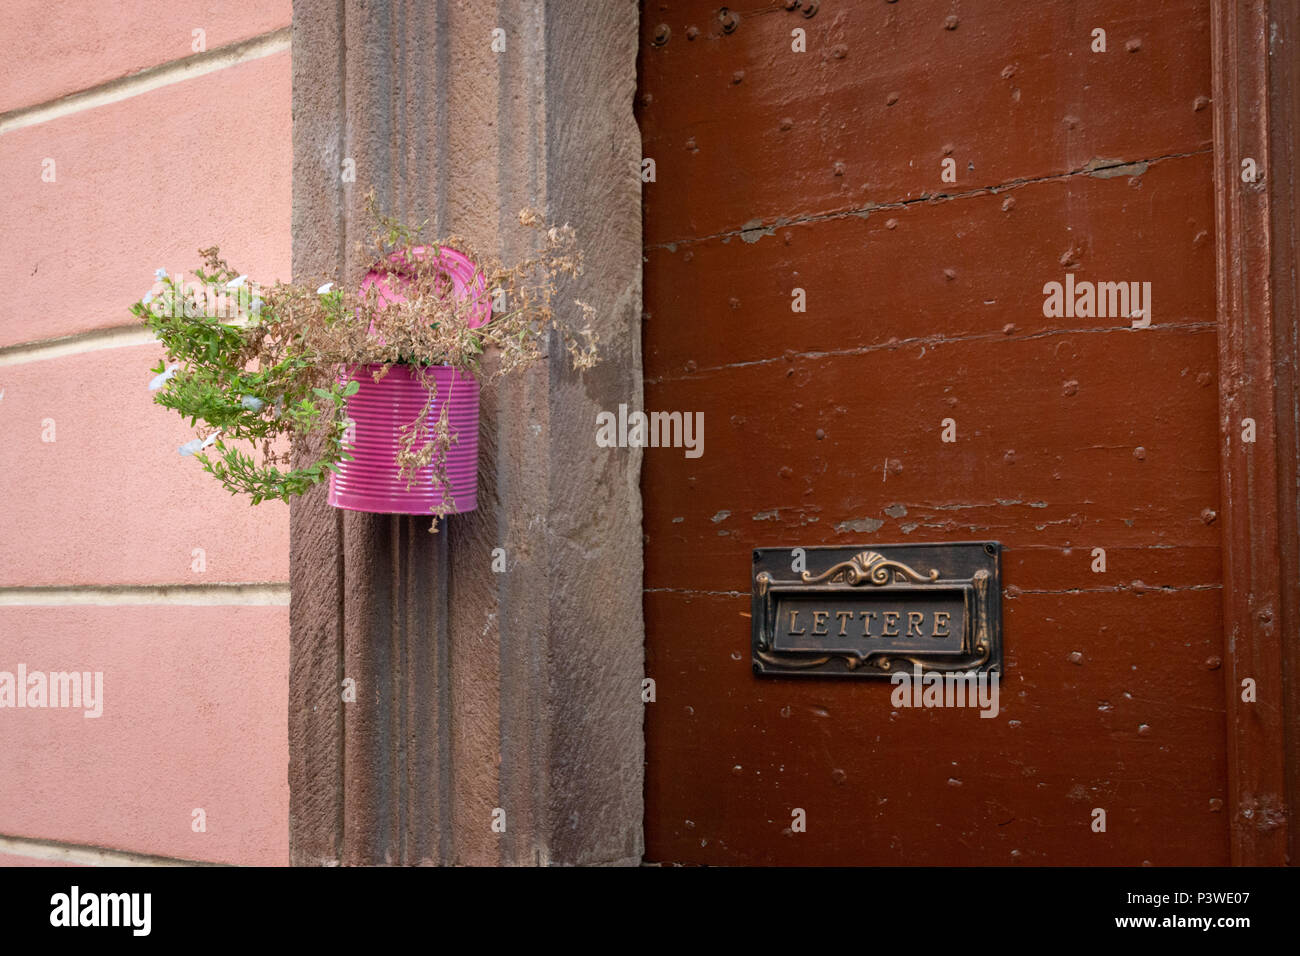 Eine bunte lackiert kann als kreativer hängender Blumentopf an eine Wand neben einem Brief Zeichen verwendet Stockfoto